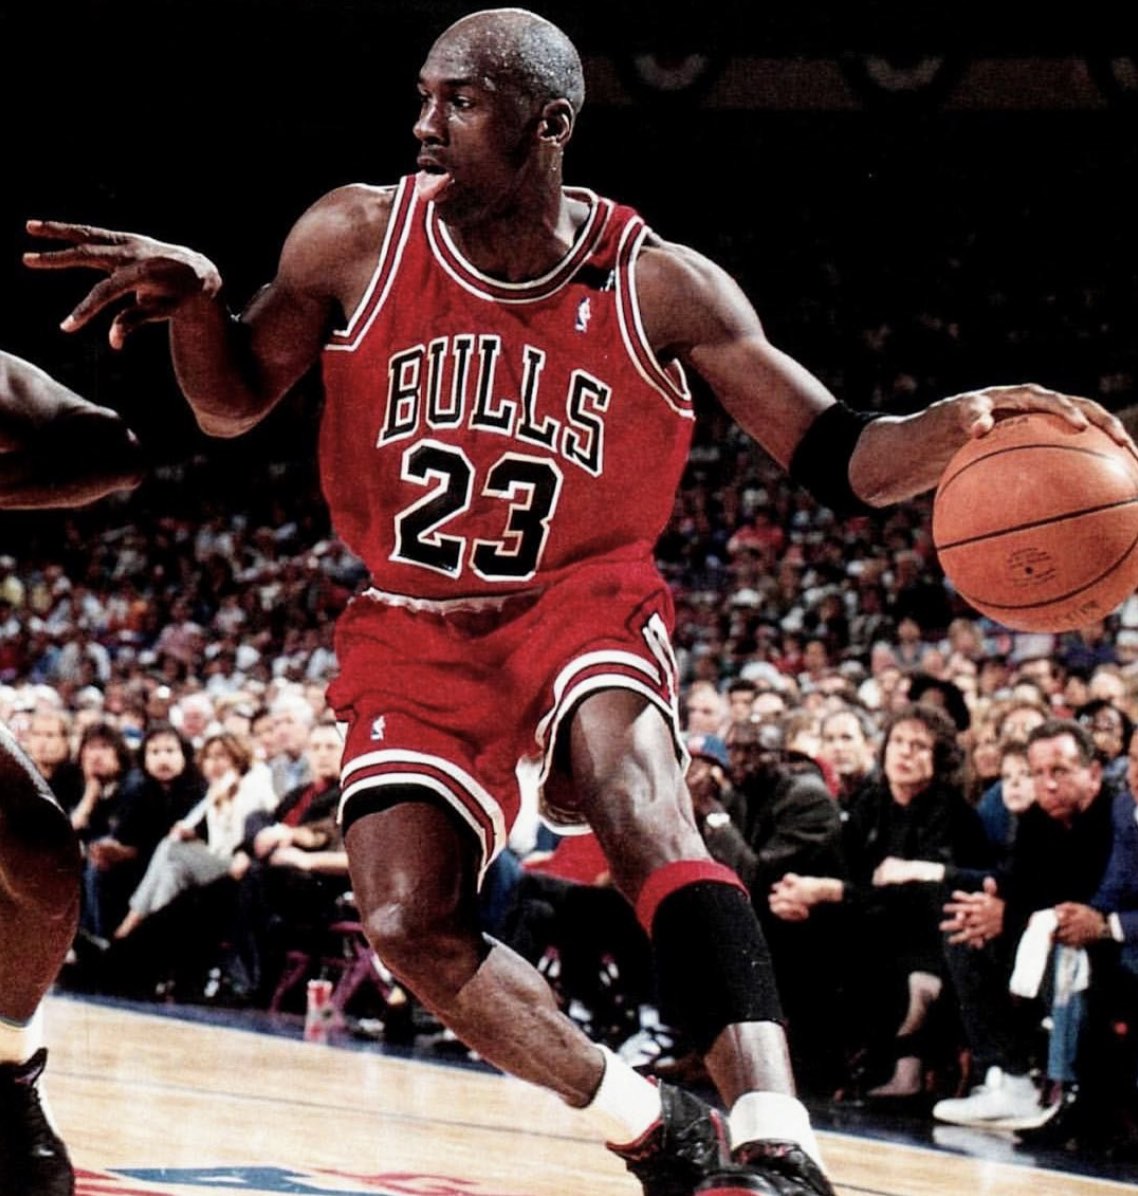 Michael Jordan Inspires Me